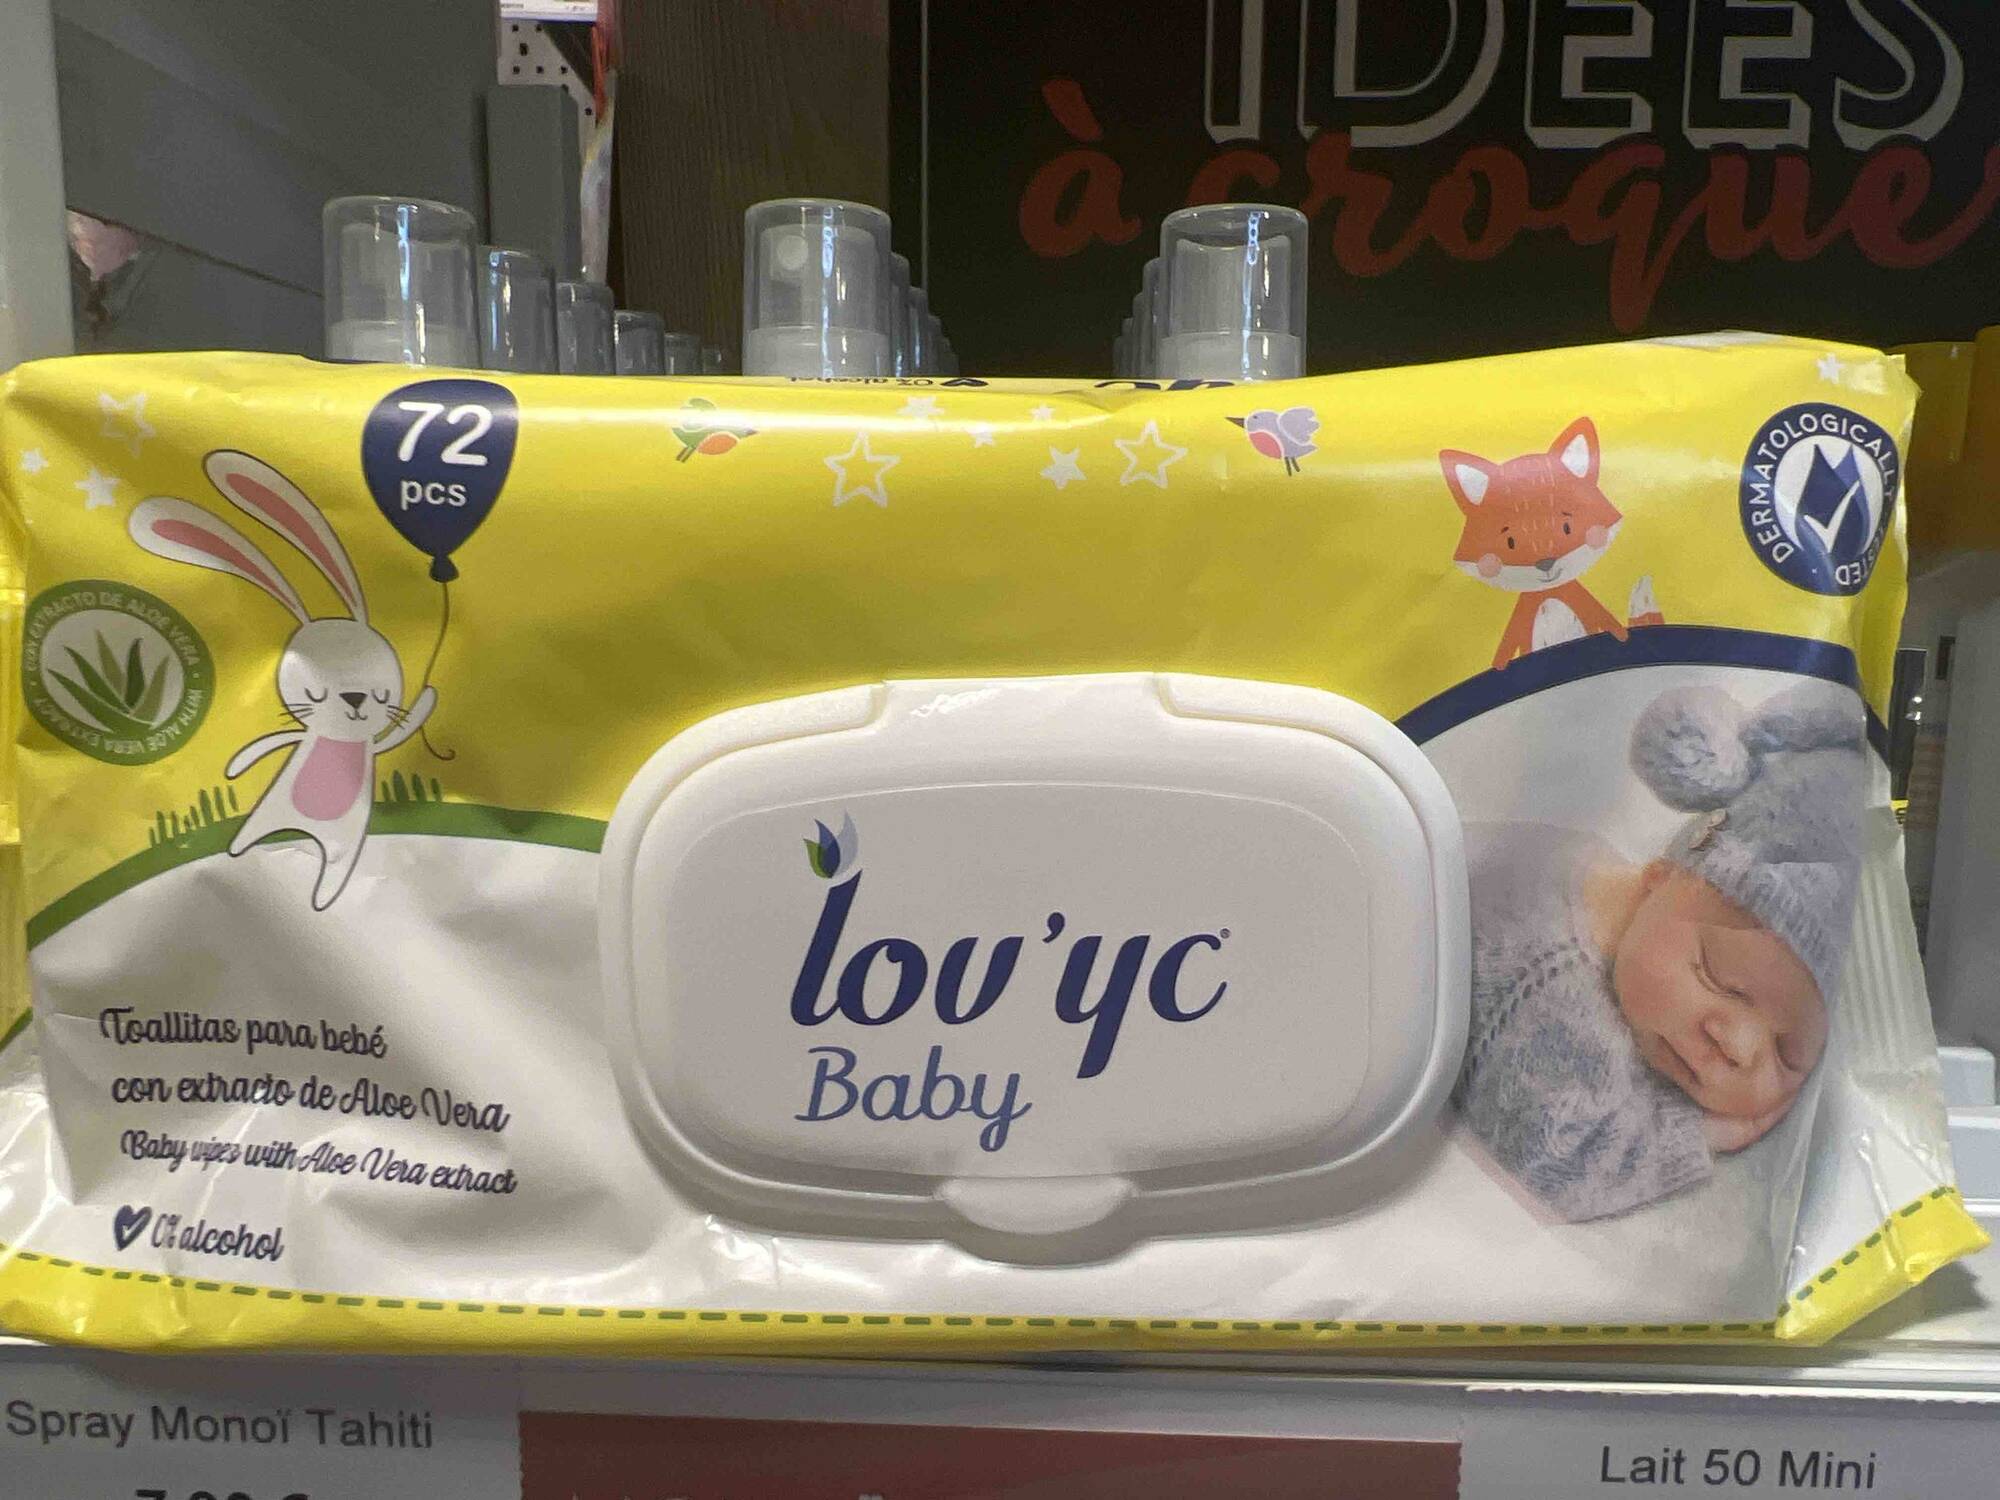 LOV'YC - Baby - Baby wipes with aloe vera extract